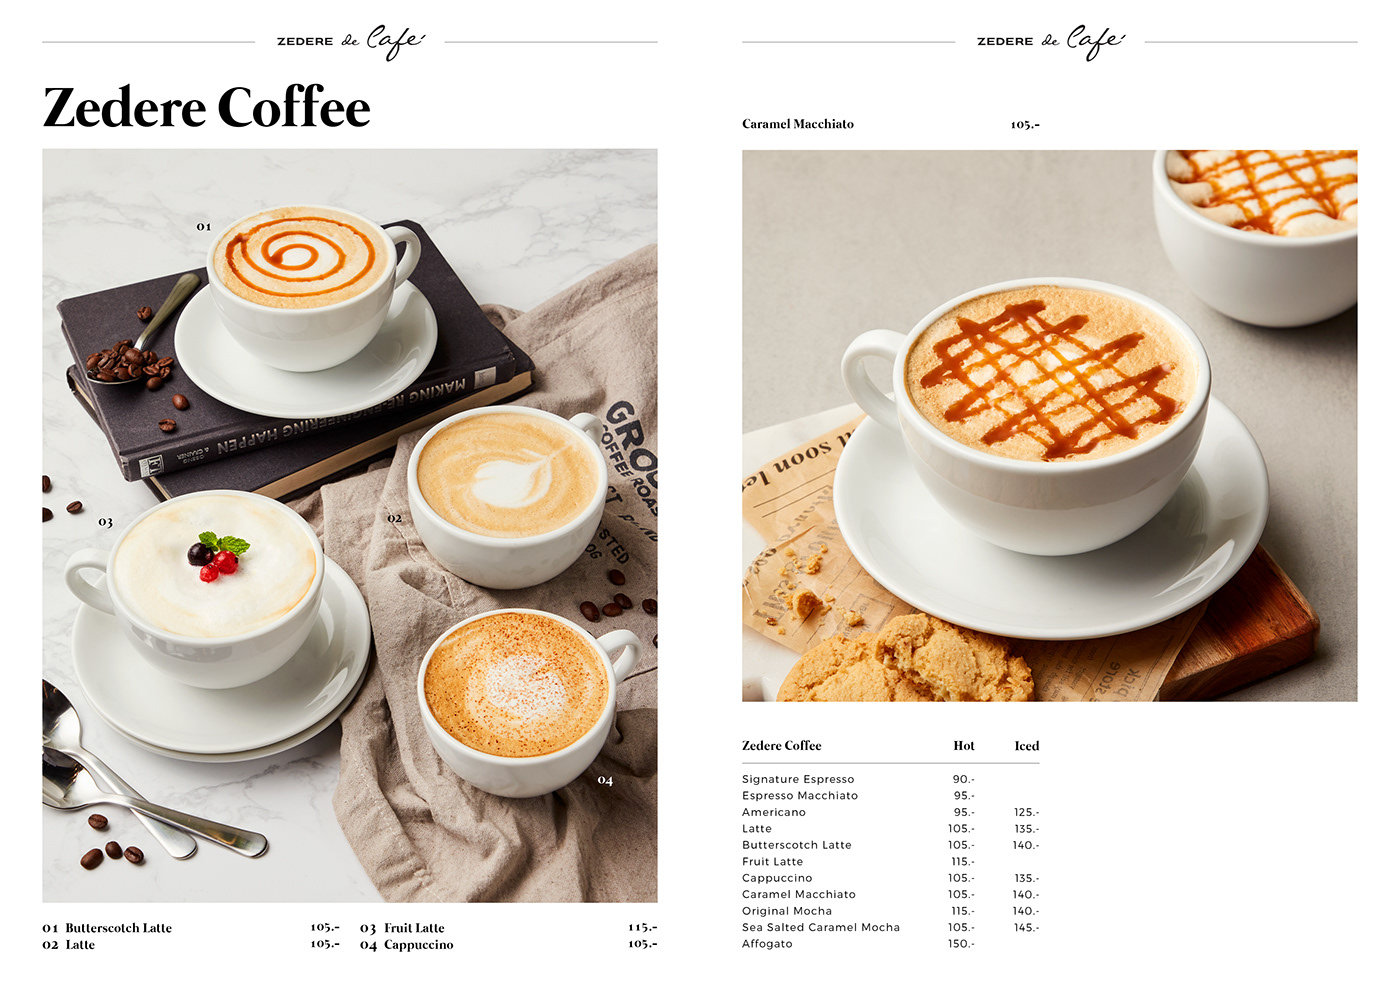 cafe Coffee drink drinkmenu foodmenu menudesign thaidesigner westerdesign zedere